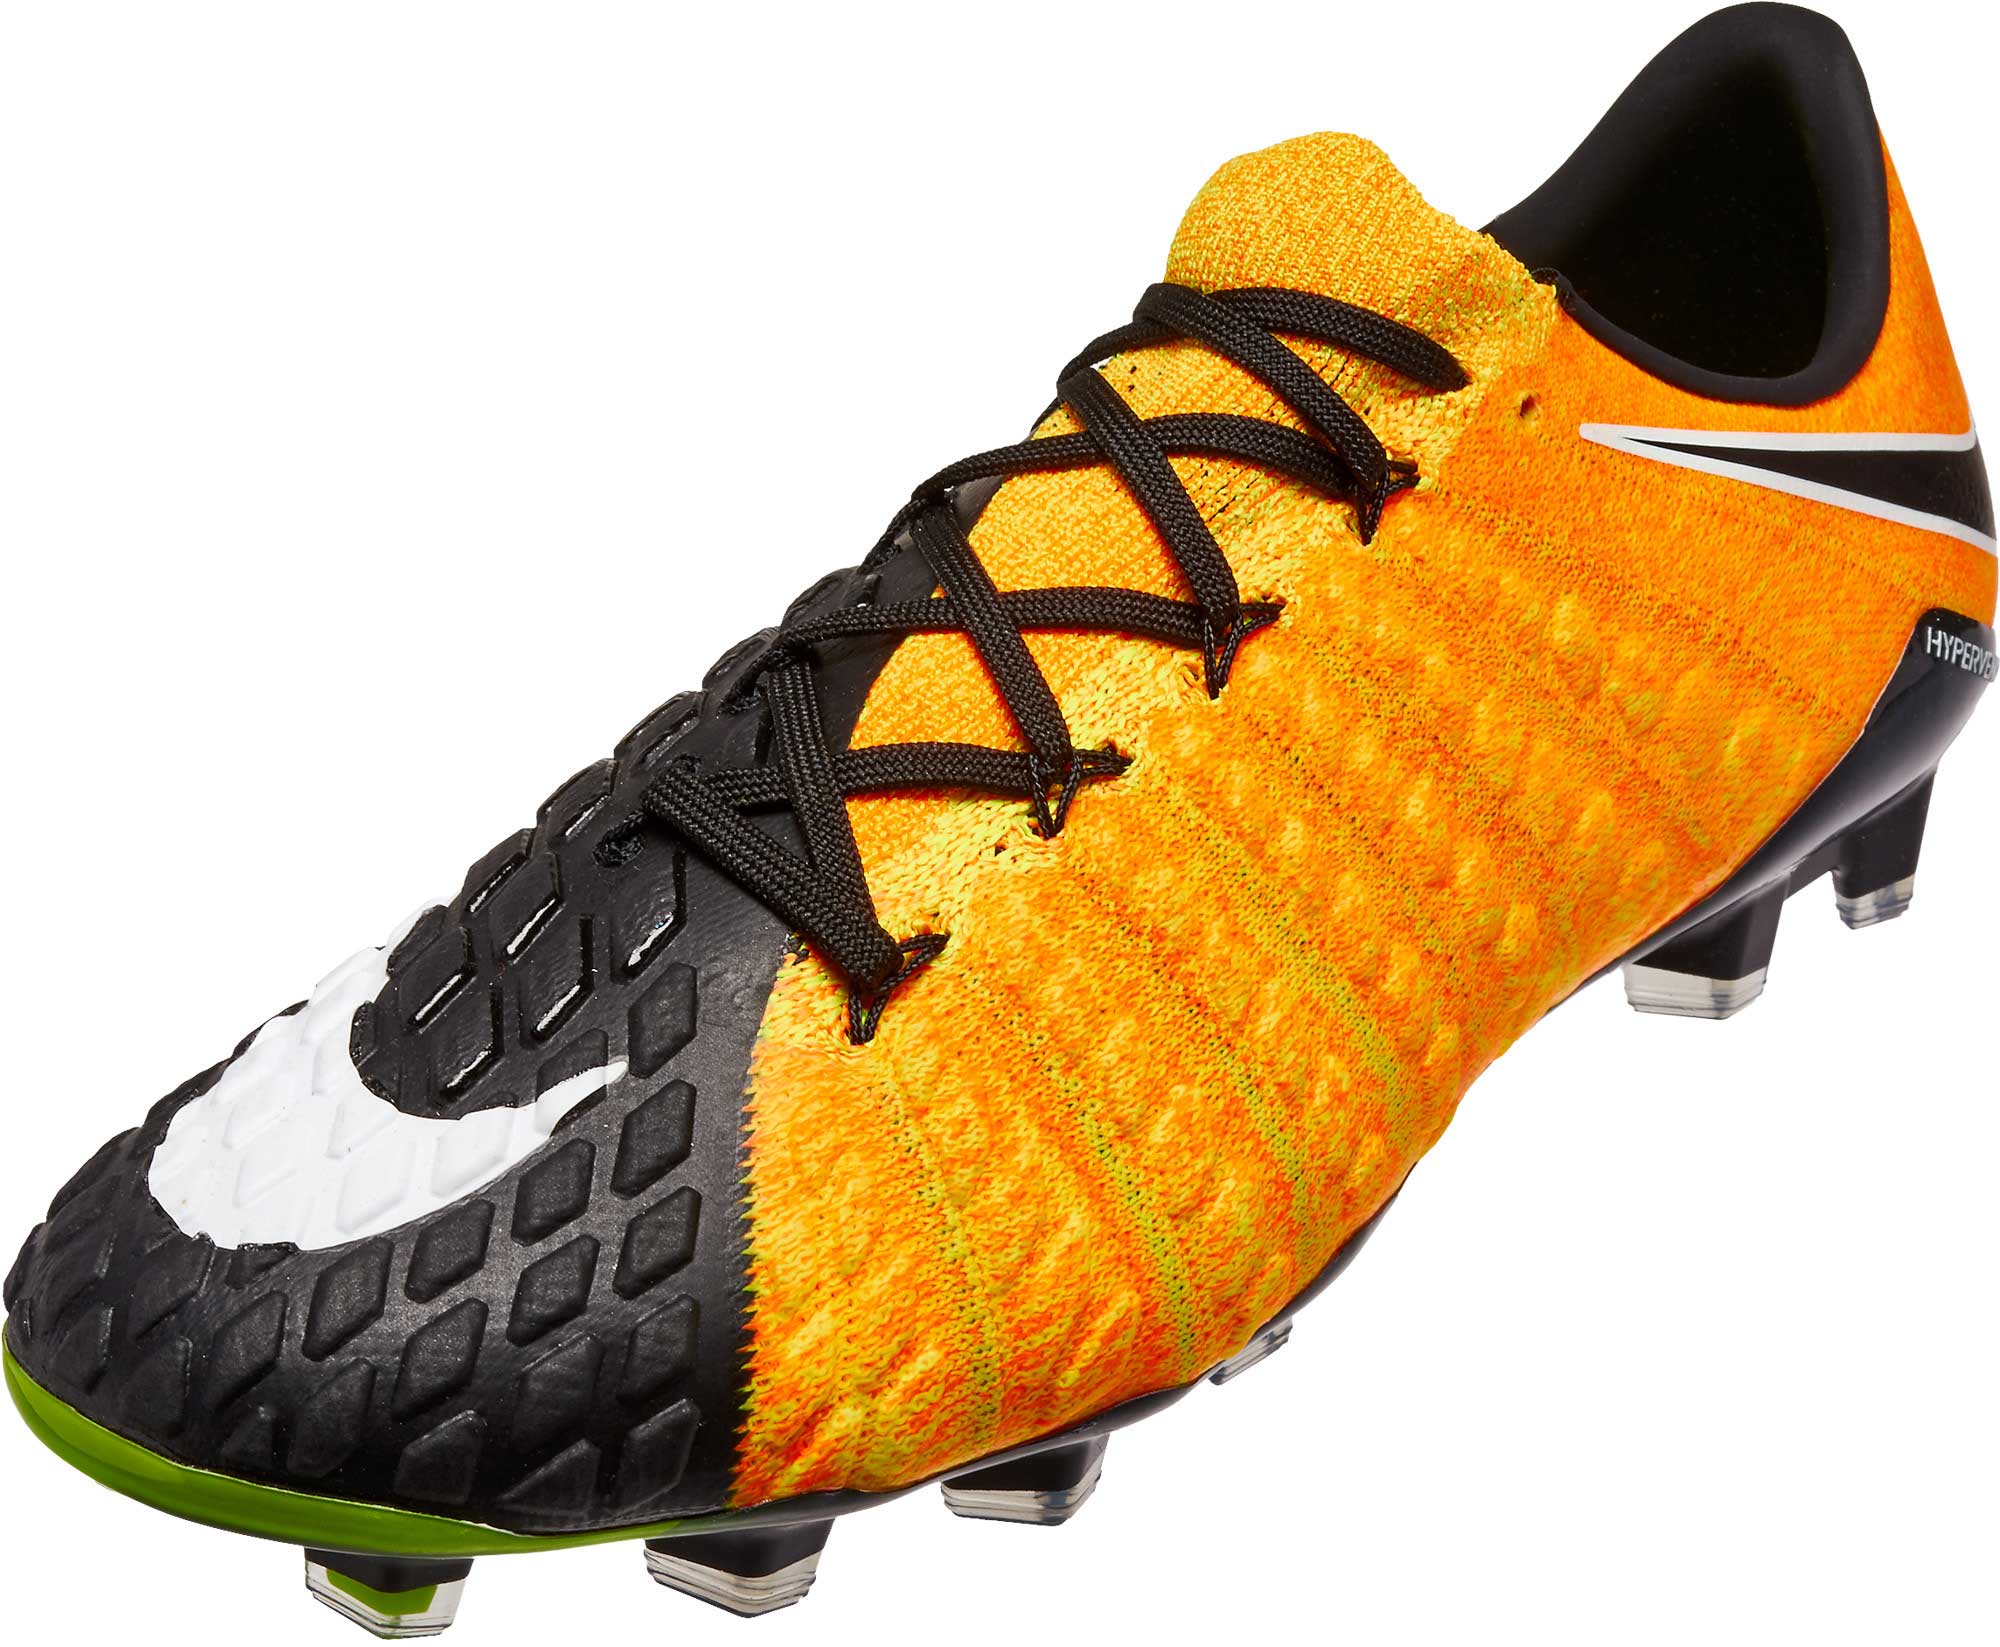 Nike Hypervenom Phantom III FG Soccer Cleats - Laser Orange & Black -  Soccer Master